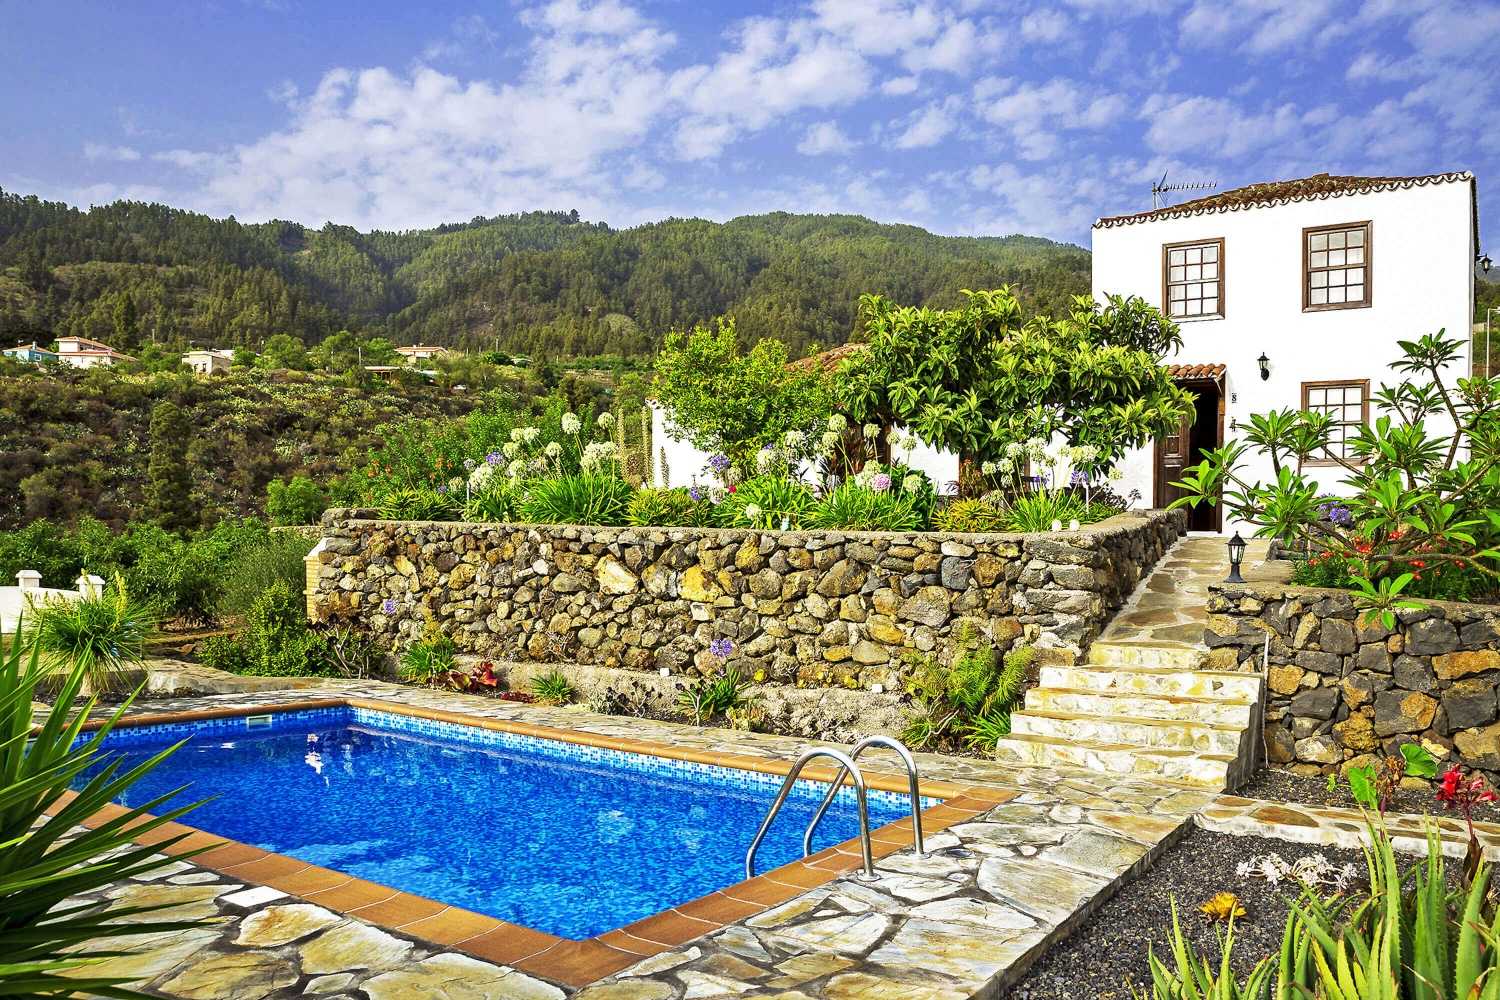 Casa rural de encanto con vistas espectaculares en una finca grande con jardines, frutales y piscina privada